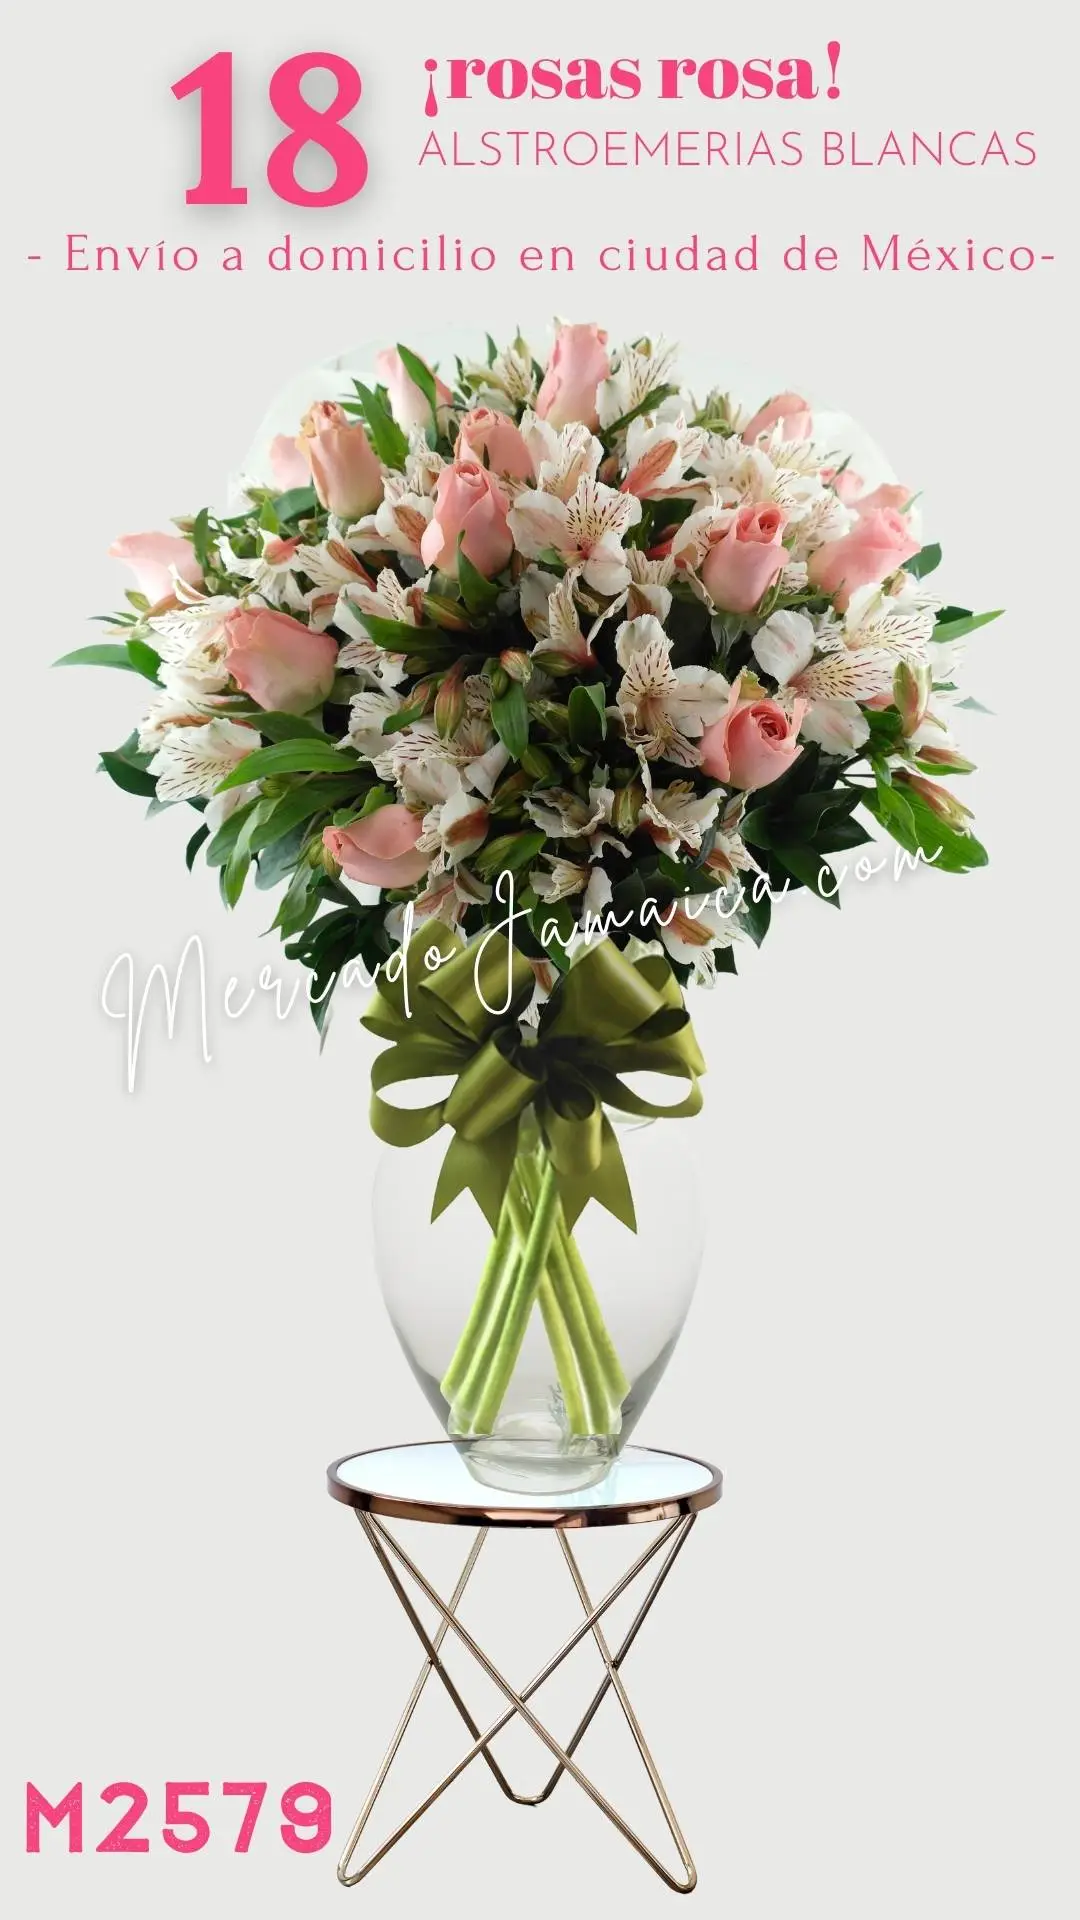 18 Rosas Color Rosa con Alstroemerias Blancas